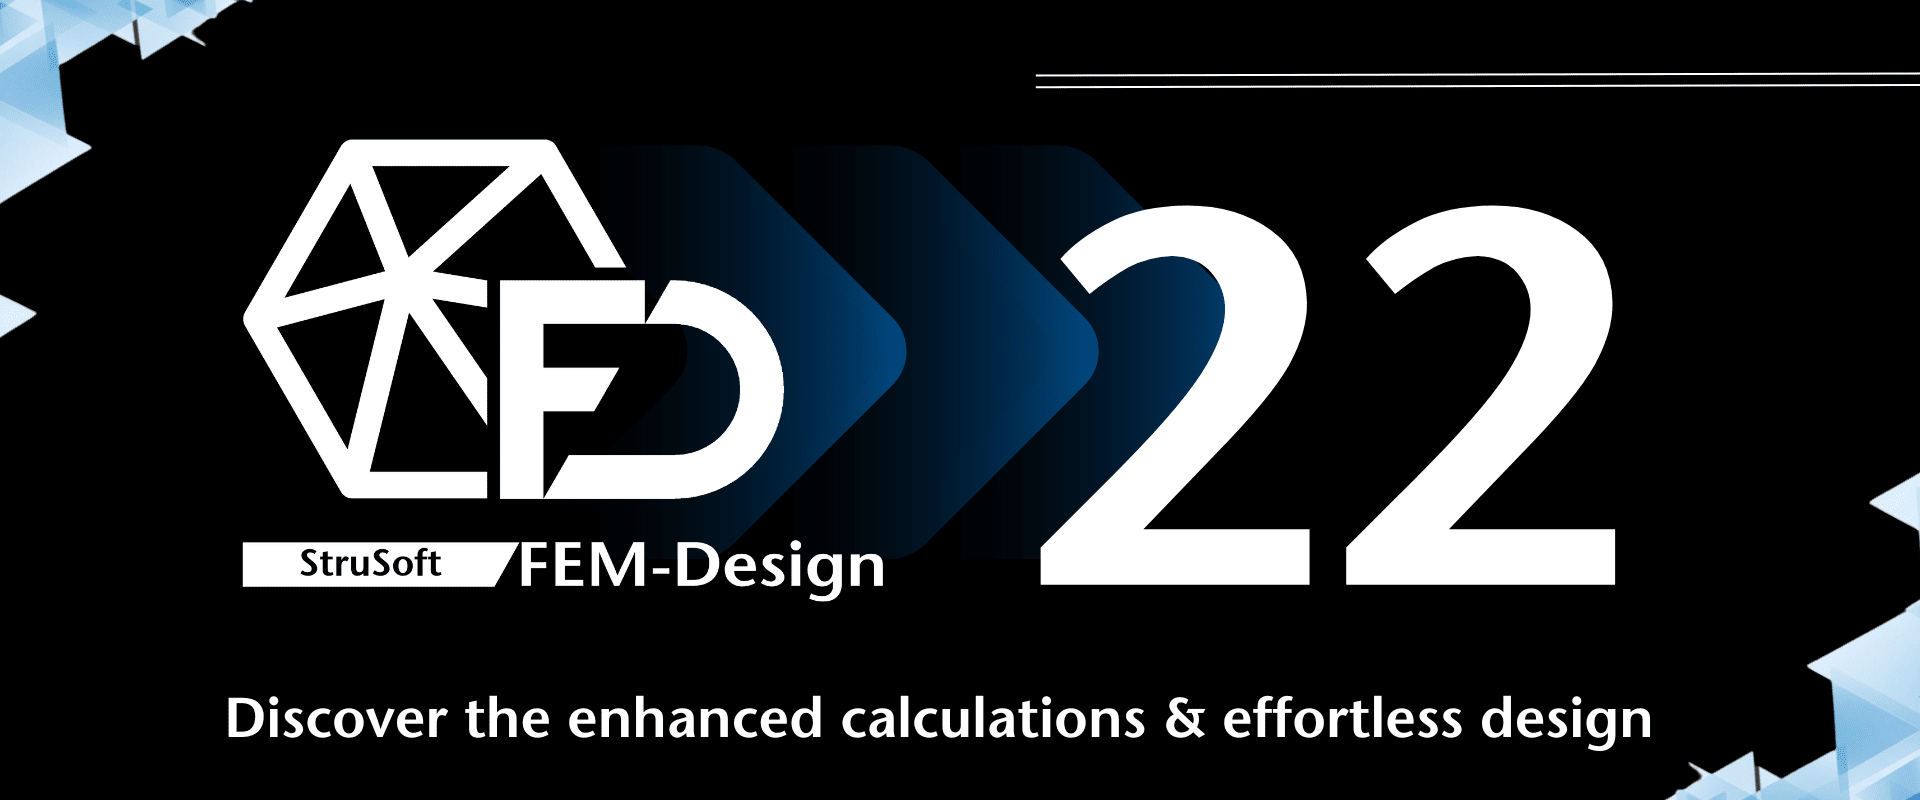 FEM-Design 22